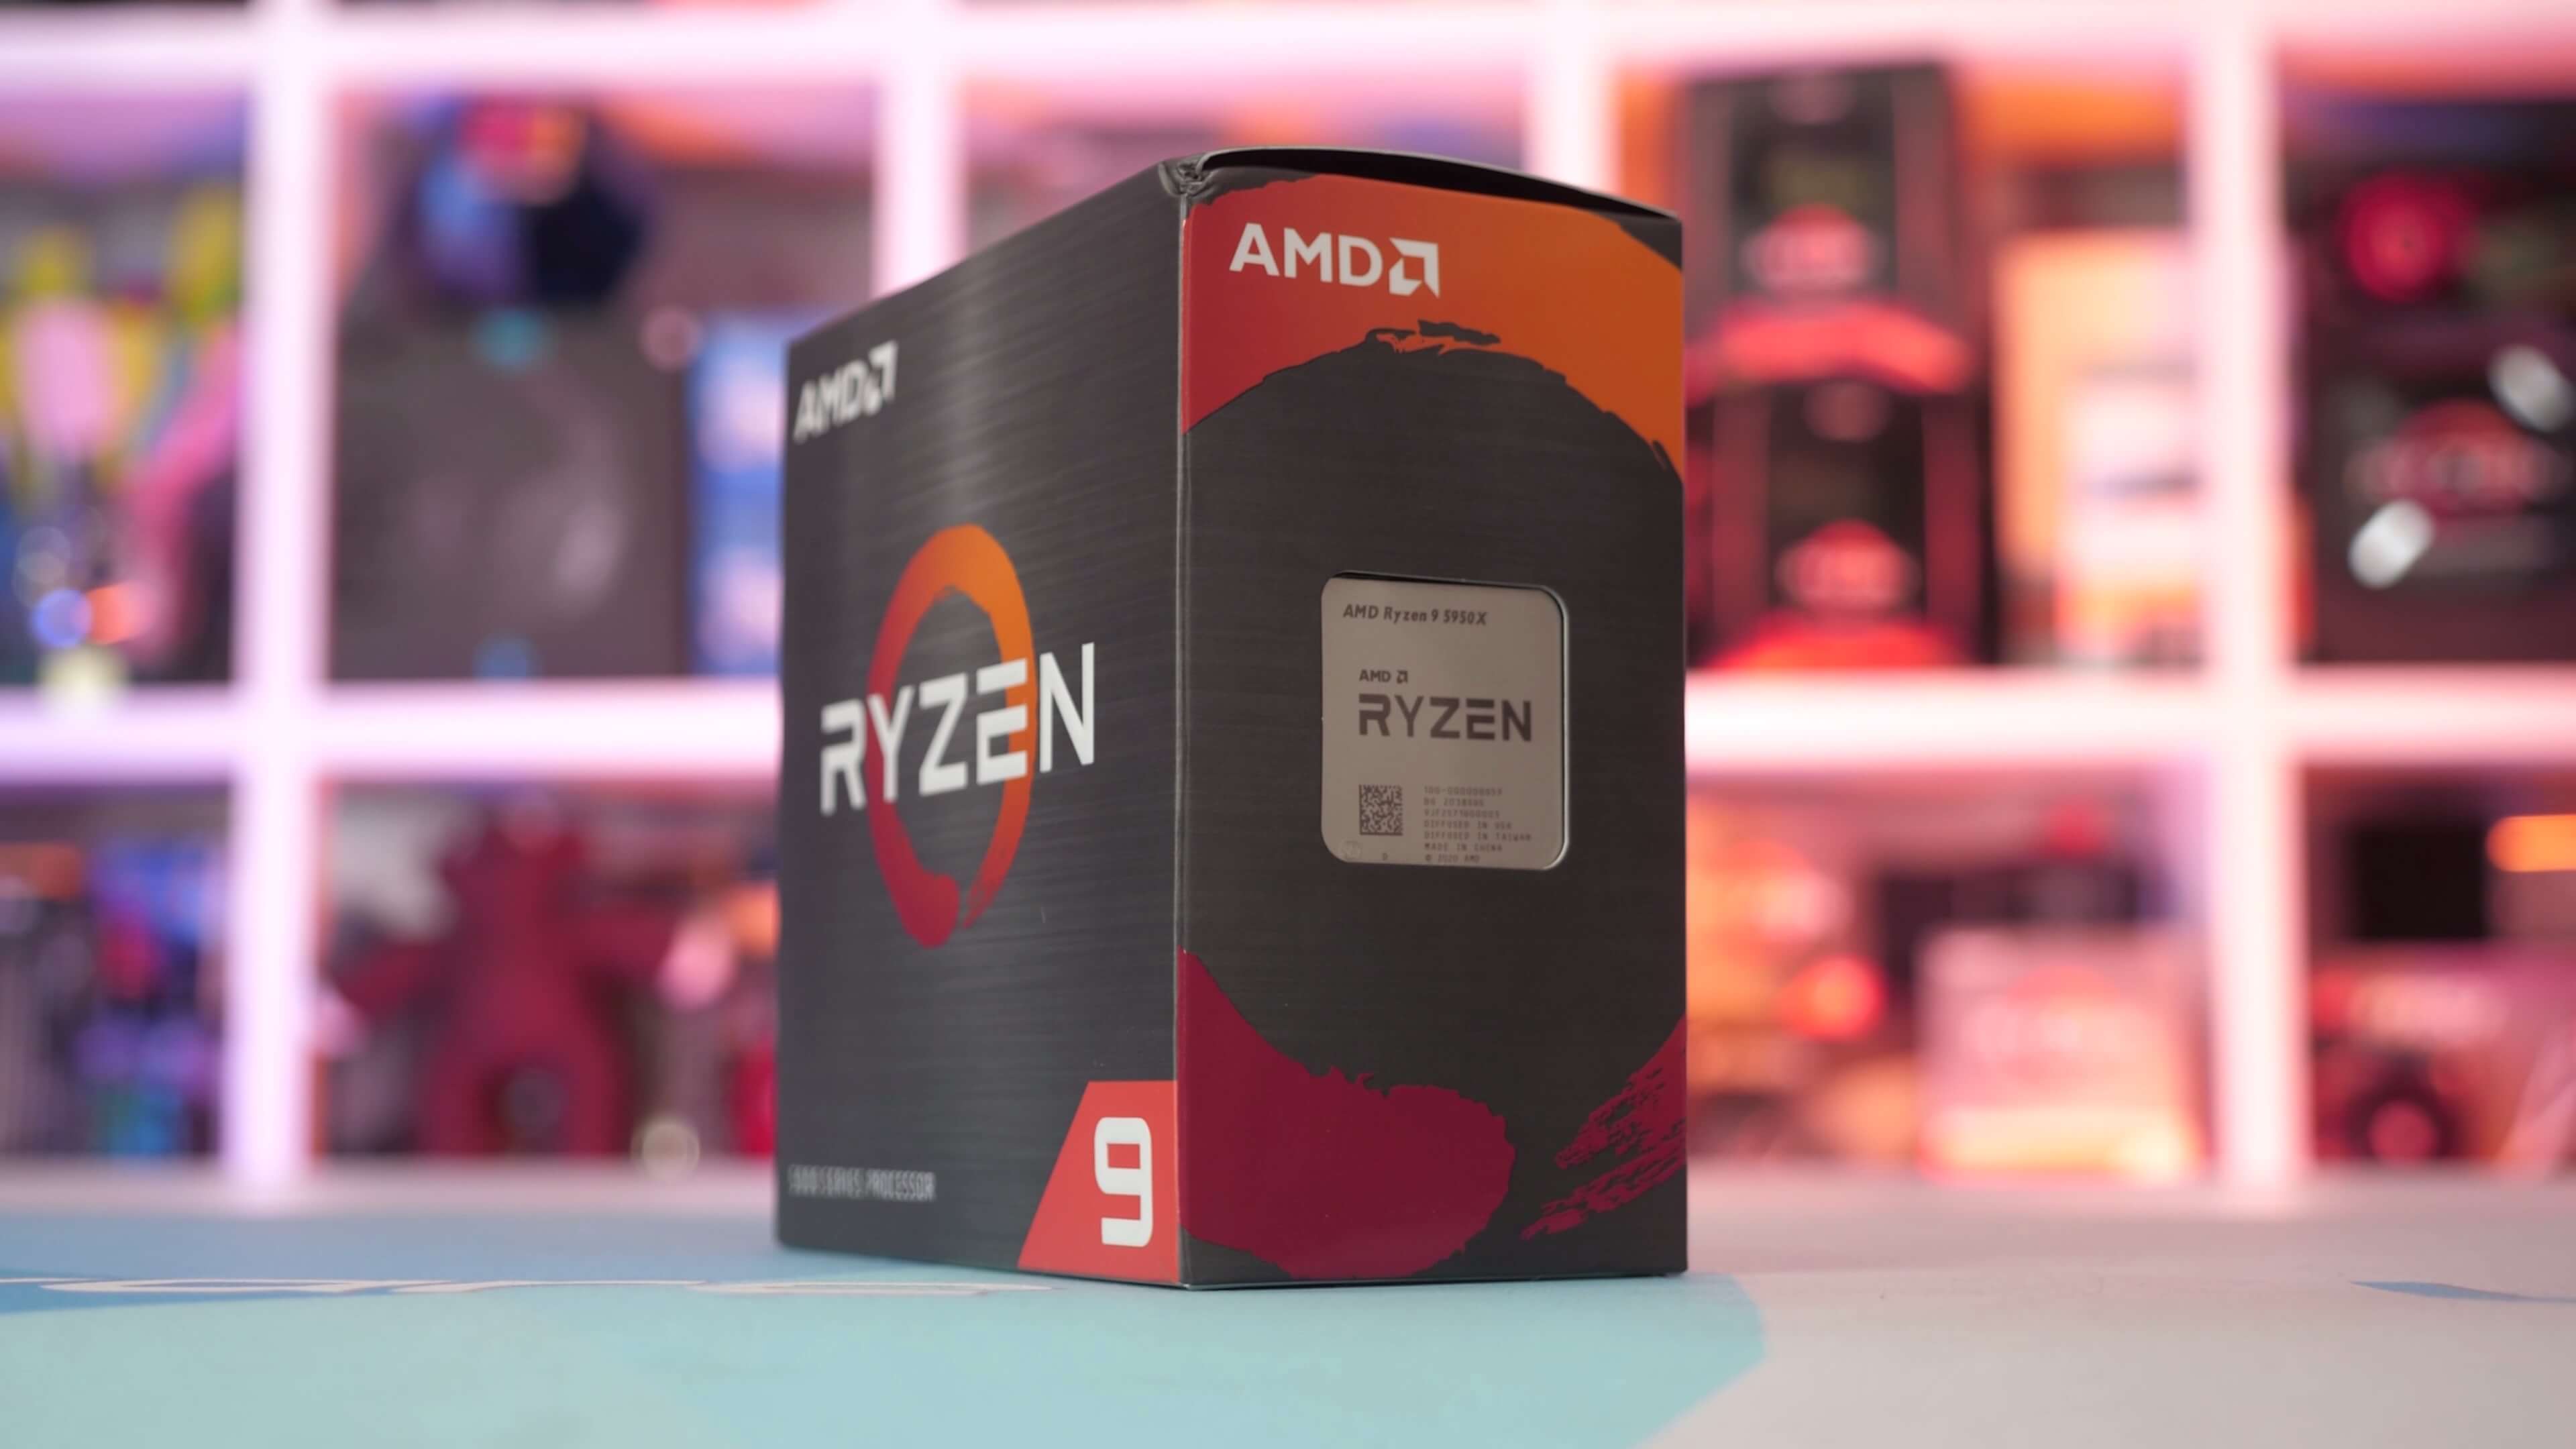 AMD Ryzen 9 5950X Review | TechSpot